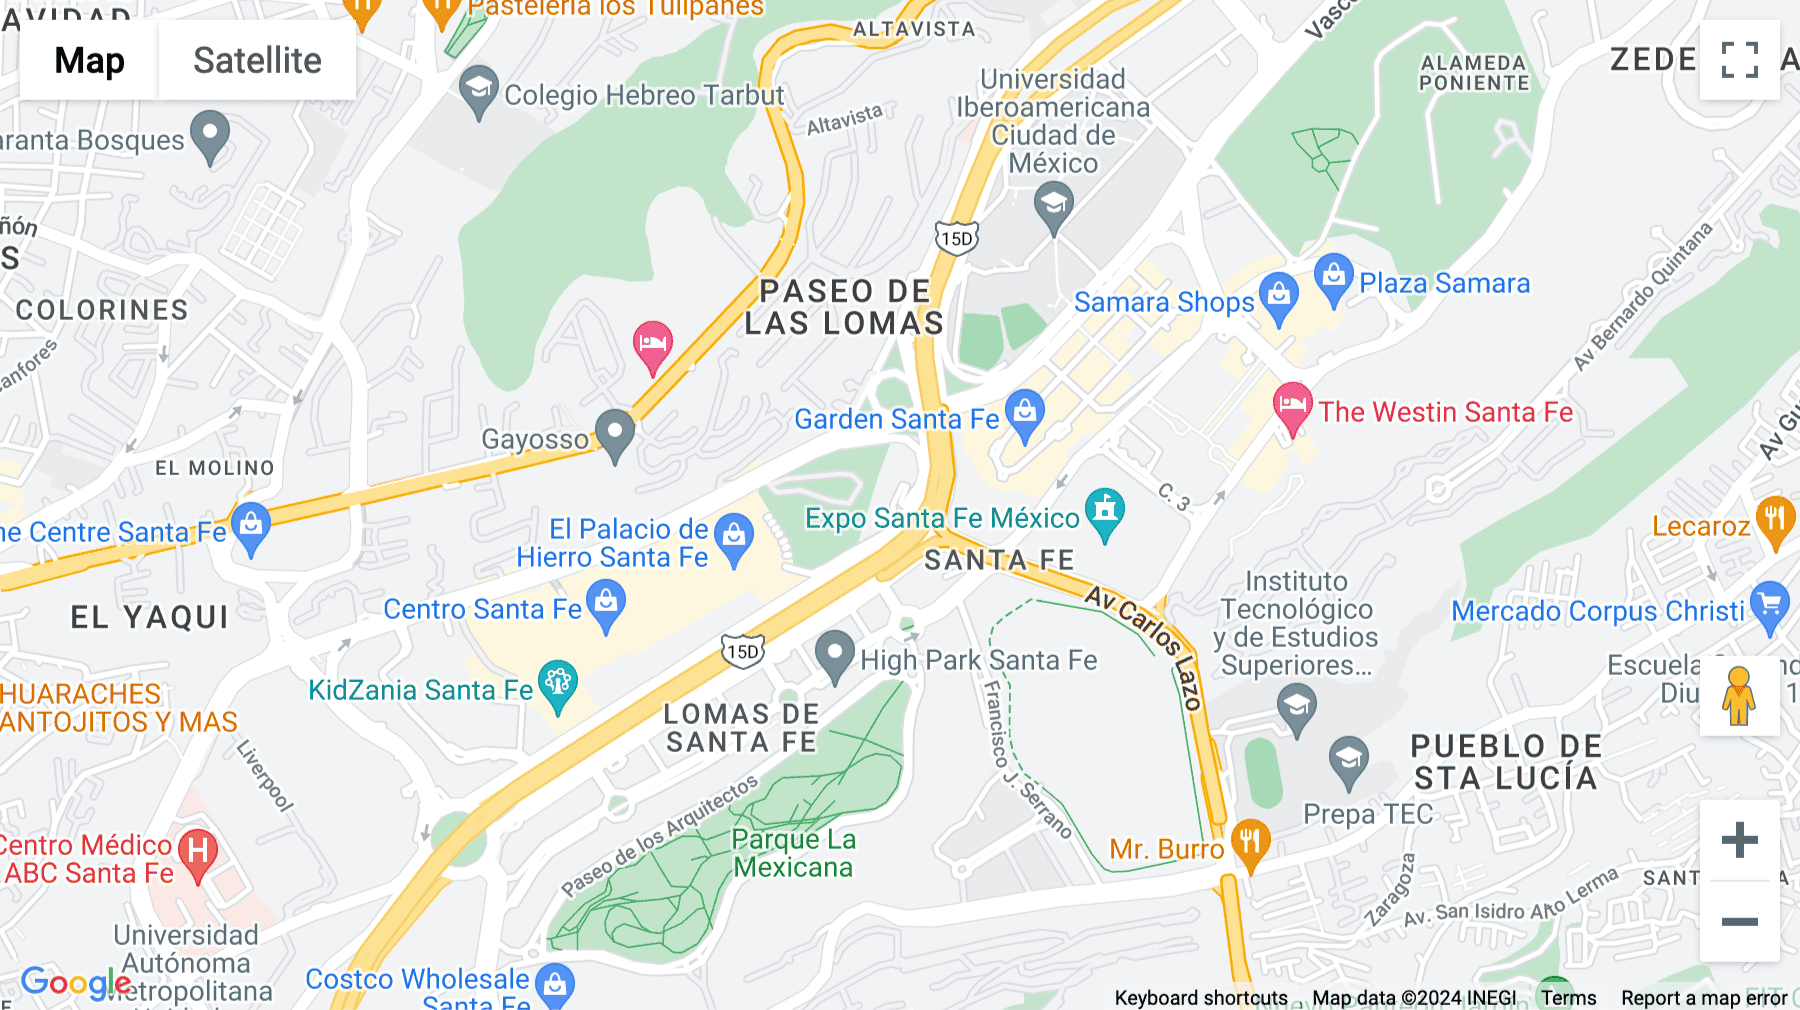 Click for interative map of Prolongación Paseo de la Reforma 1015, Col. Santa Fe, Alvaro Obregon, Mexico City